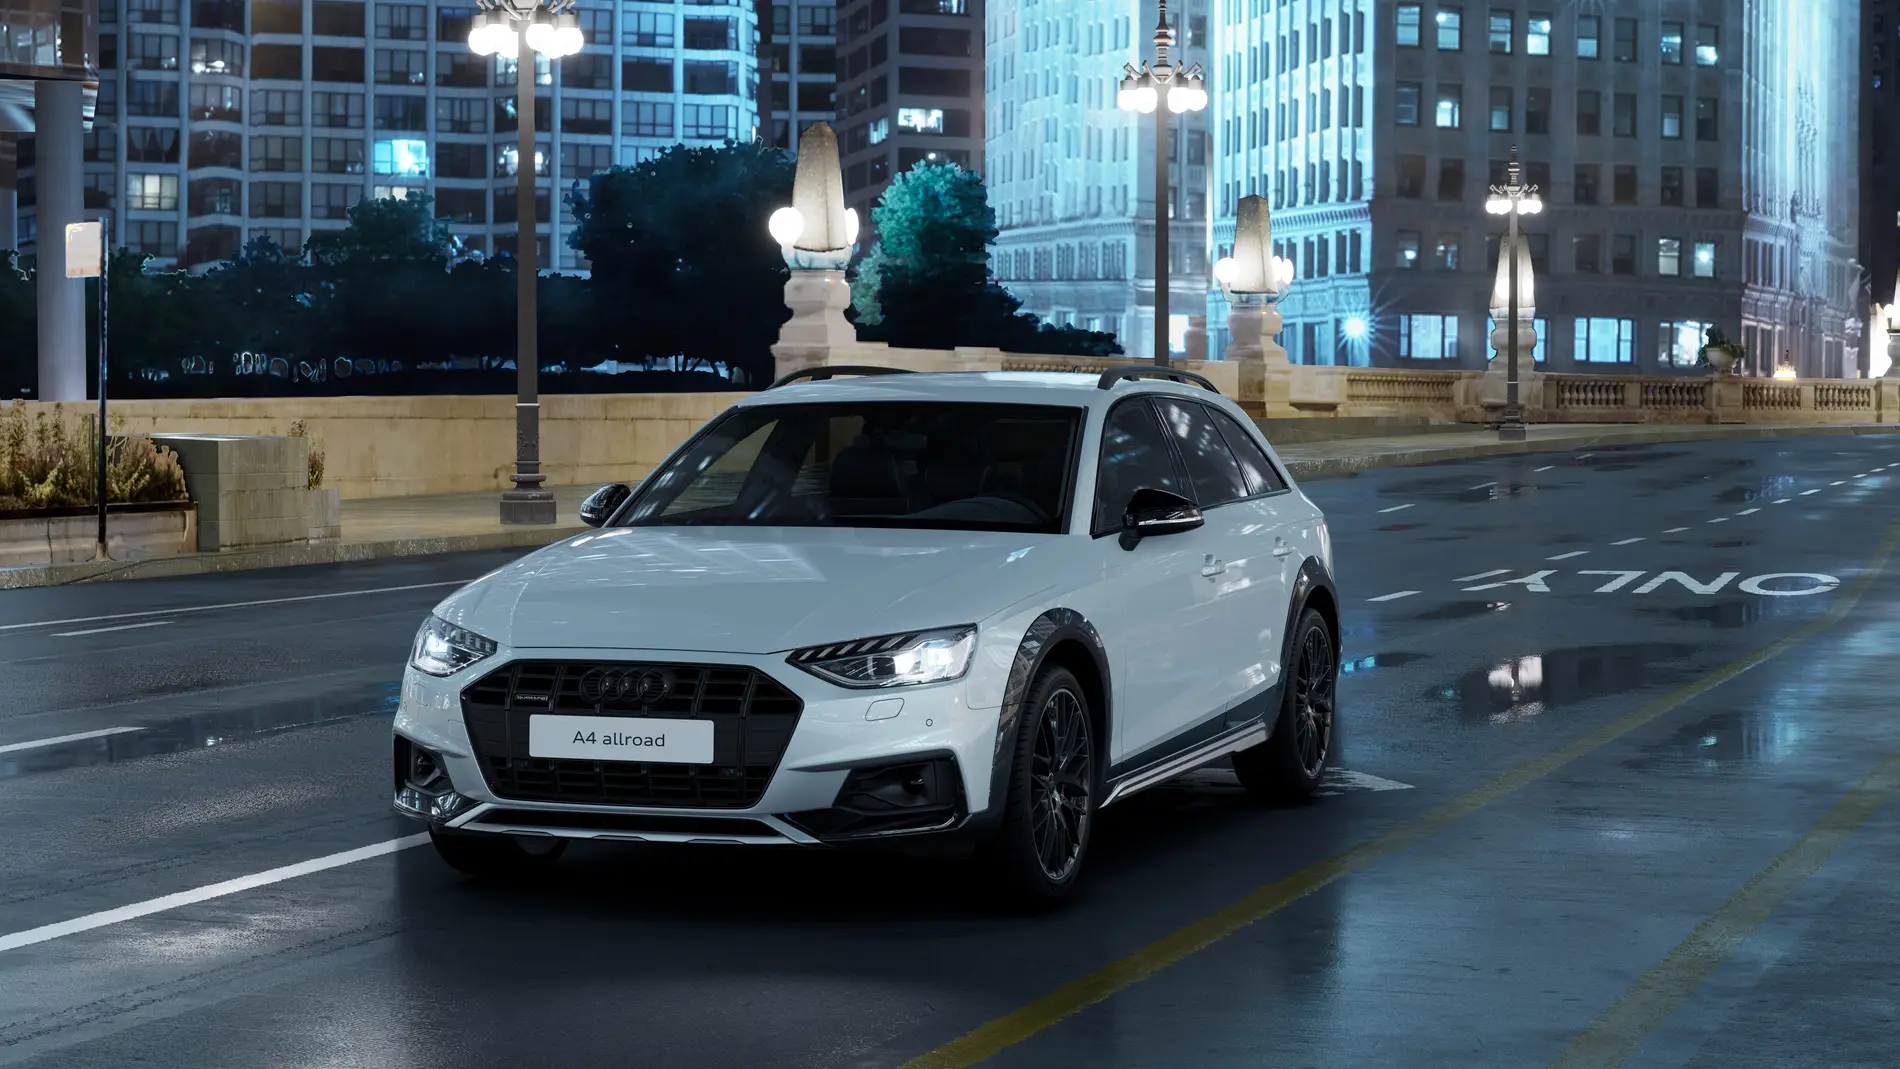 La exclusiva edición limitada del Audi A4 allroad llega a España... aunque solo habrá 55 unidades